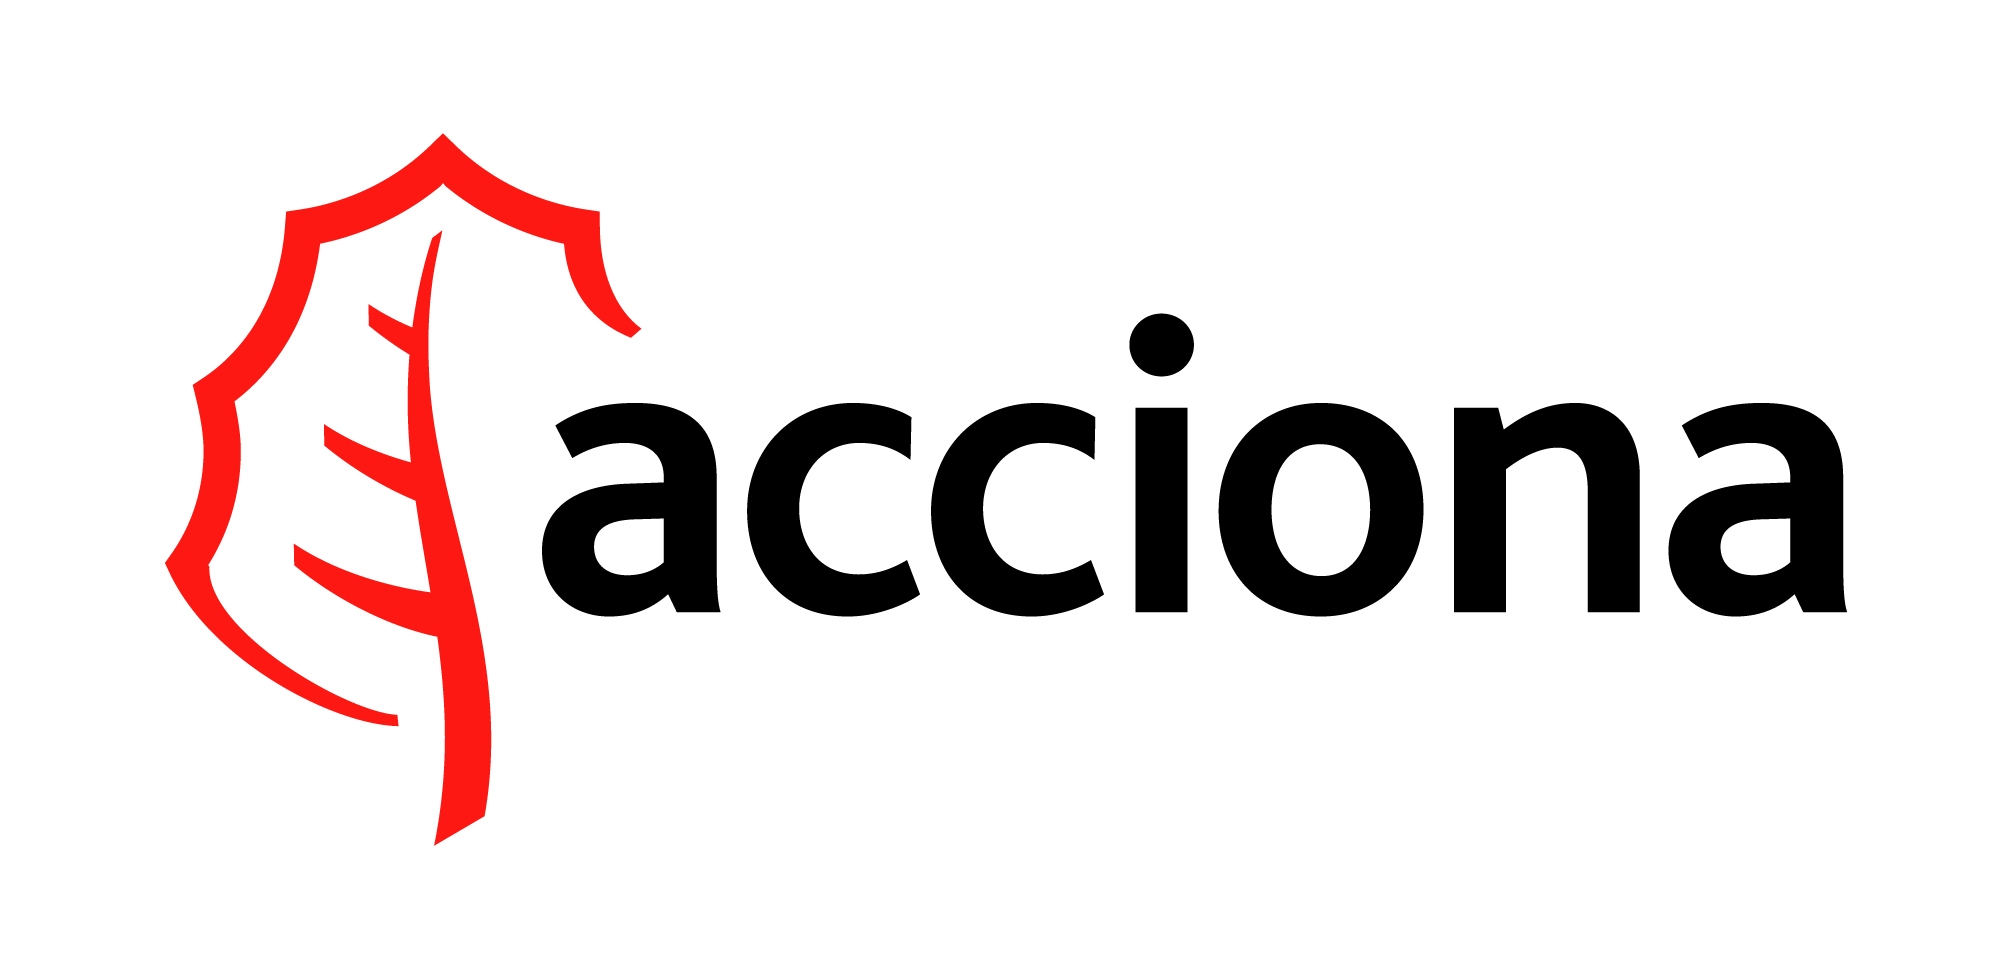 Acciona Logo - Acciona, Transparent background PNG HD thumbnail